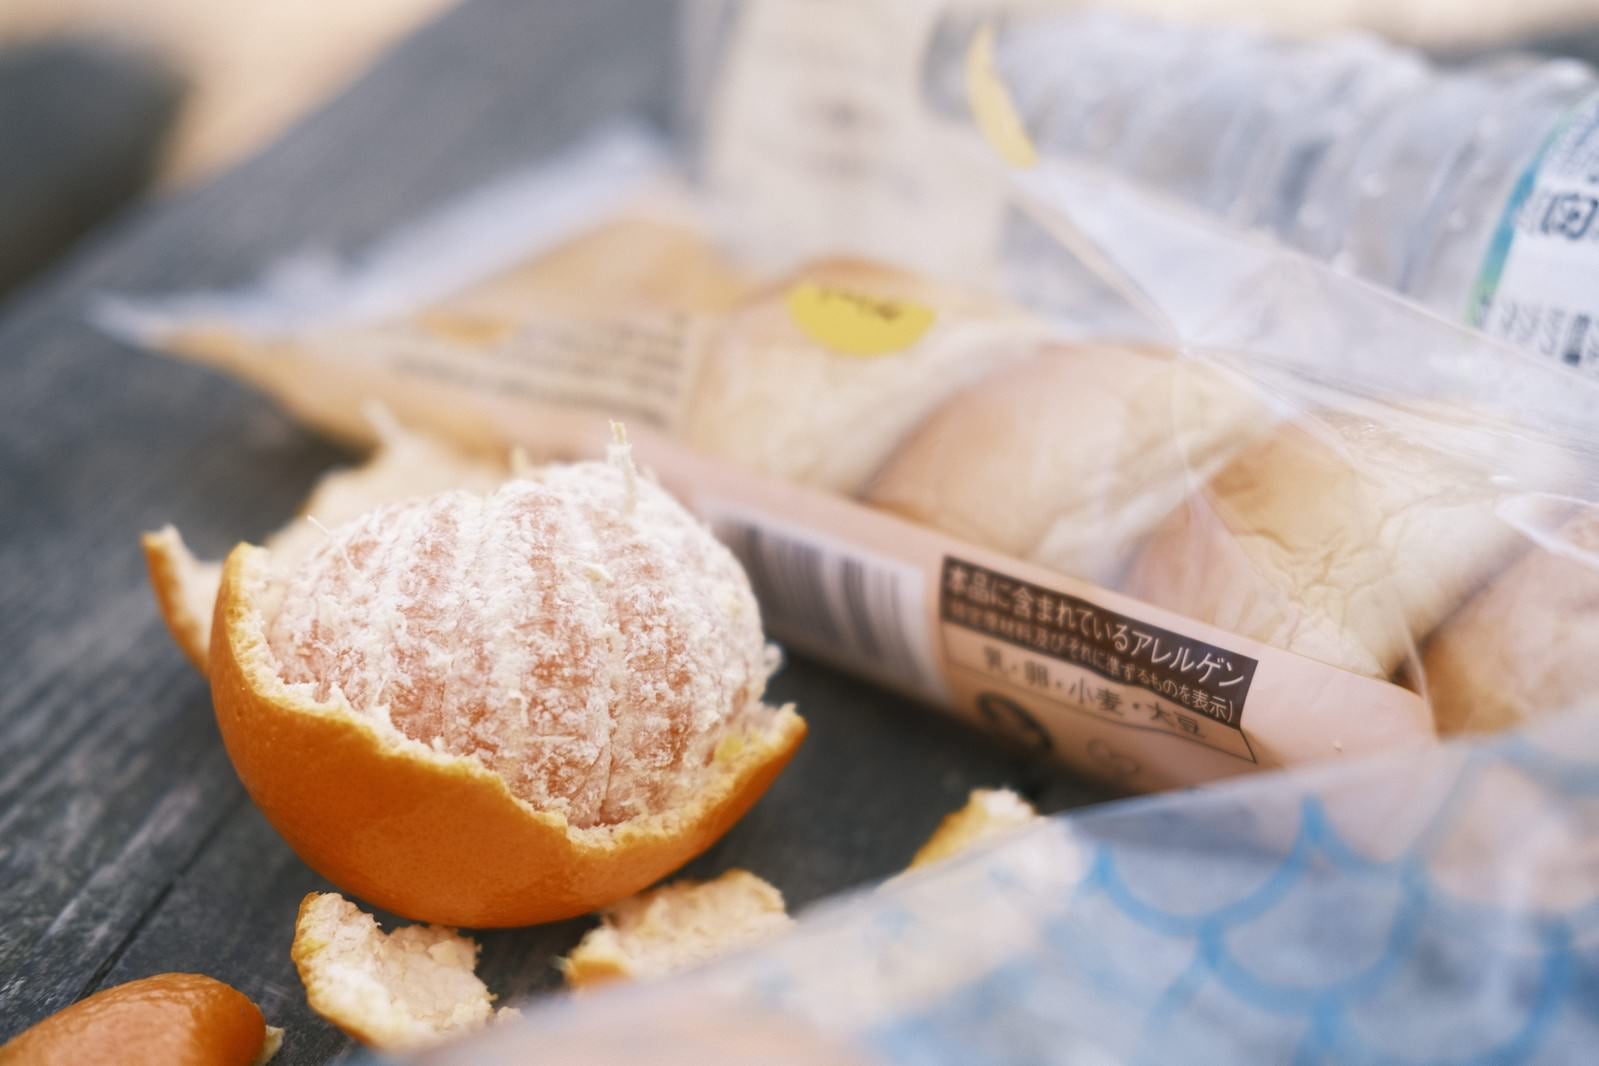 「ハイキング用に準備されたおいしそうなオレンジと菓子パン」の写真